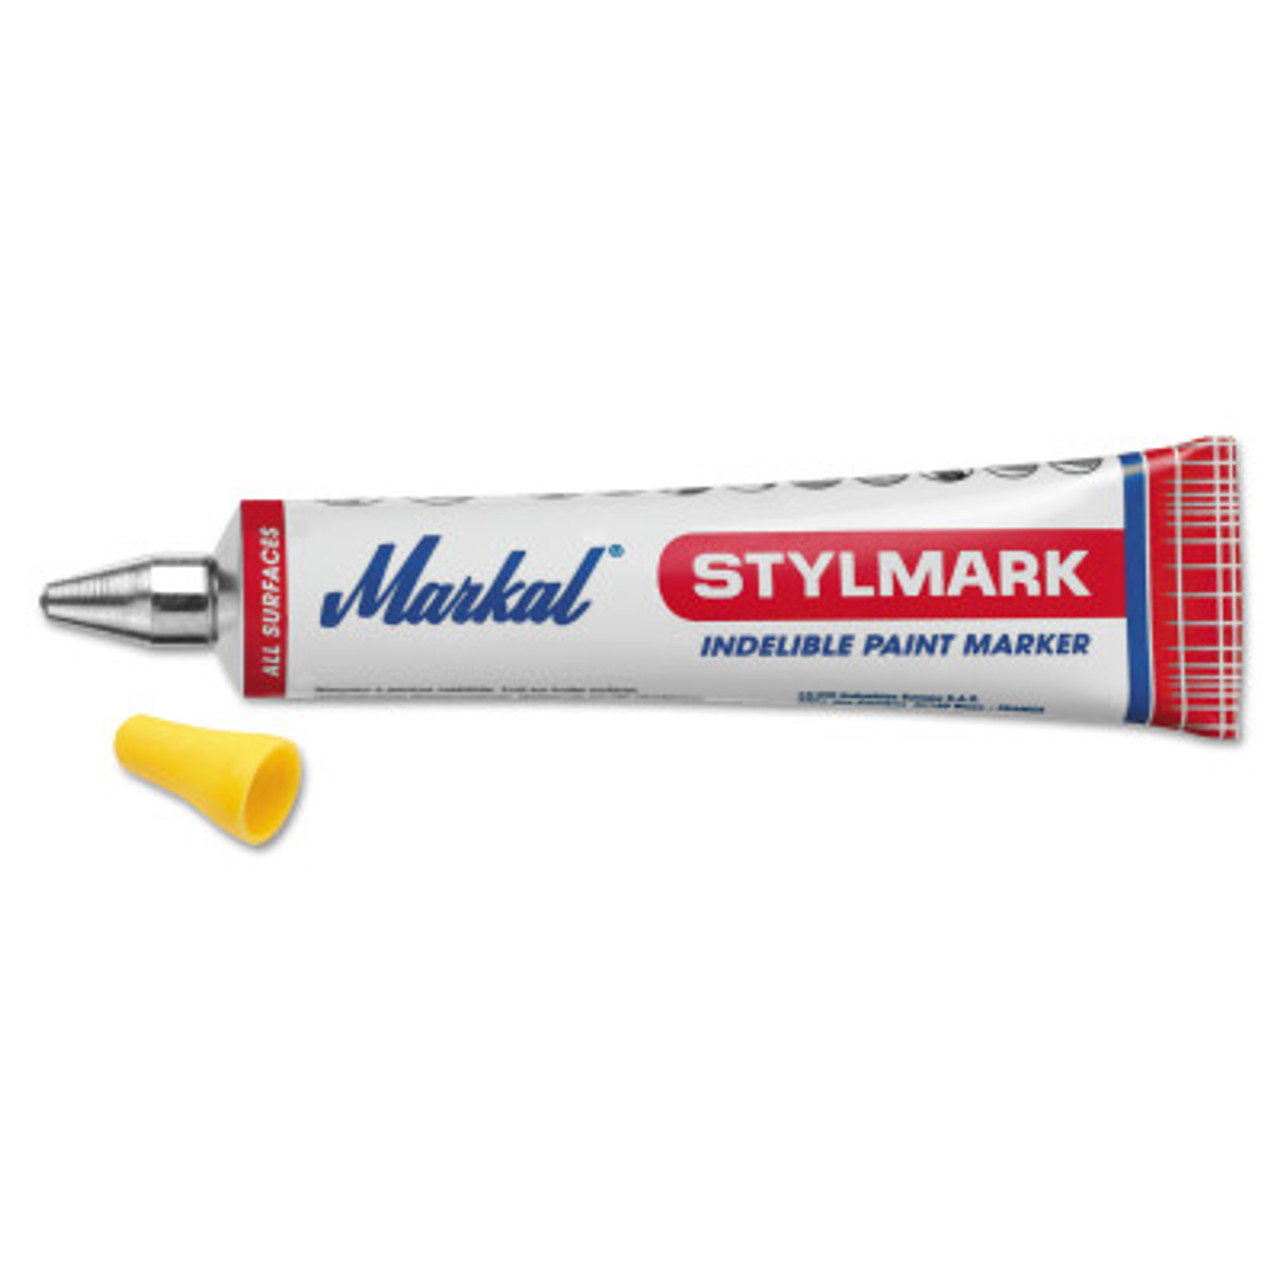 Markal 96006 Silver Streak Metal Marker Round